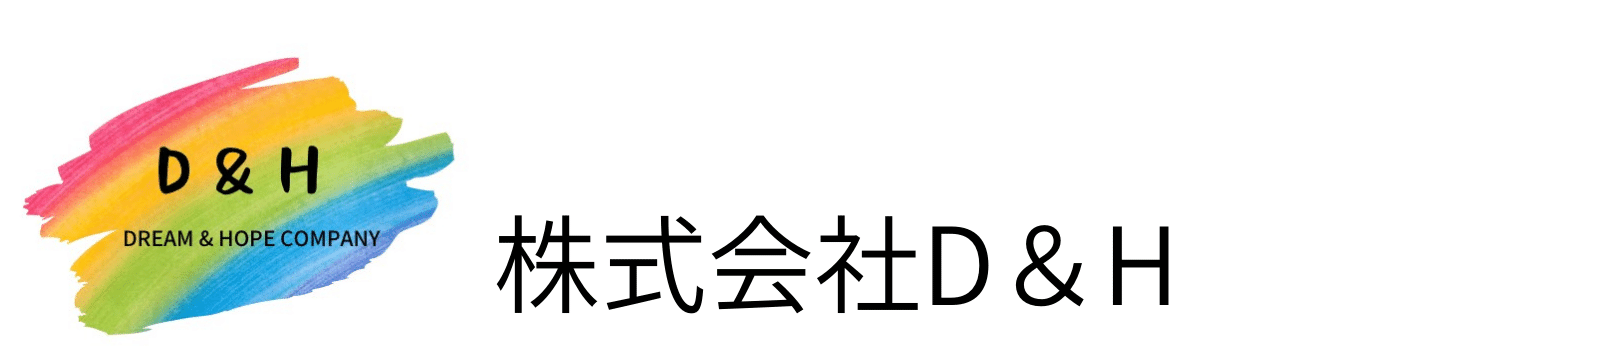 株式会社D&H